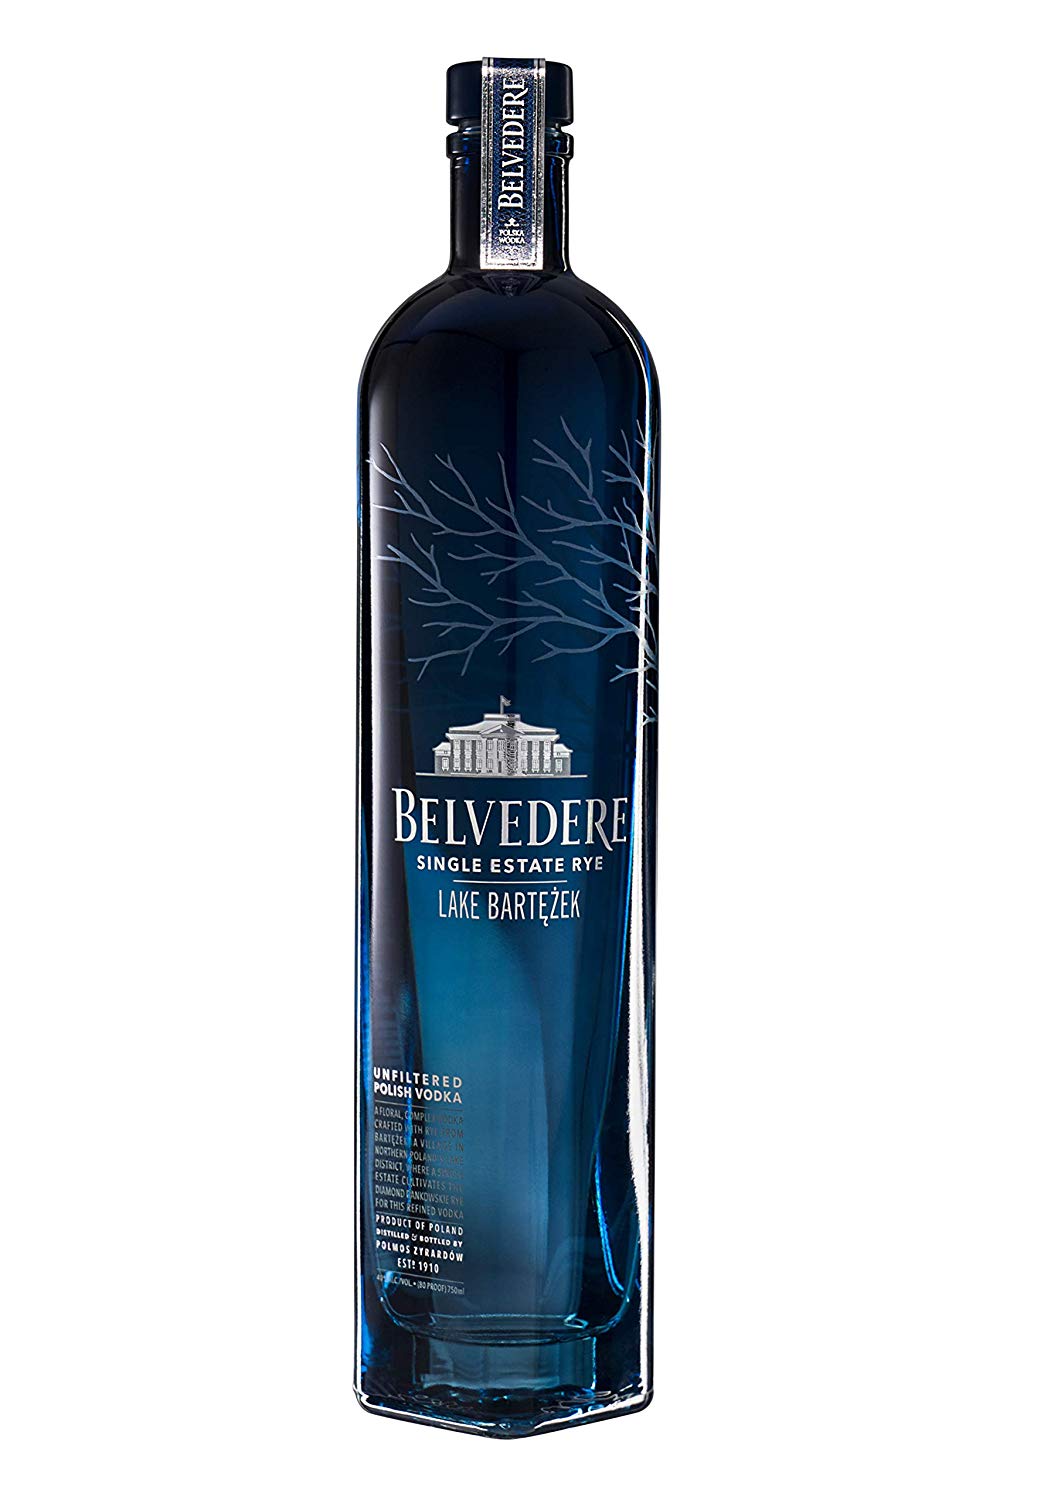 BUY] Belvedere Pure Vodka